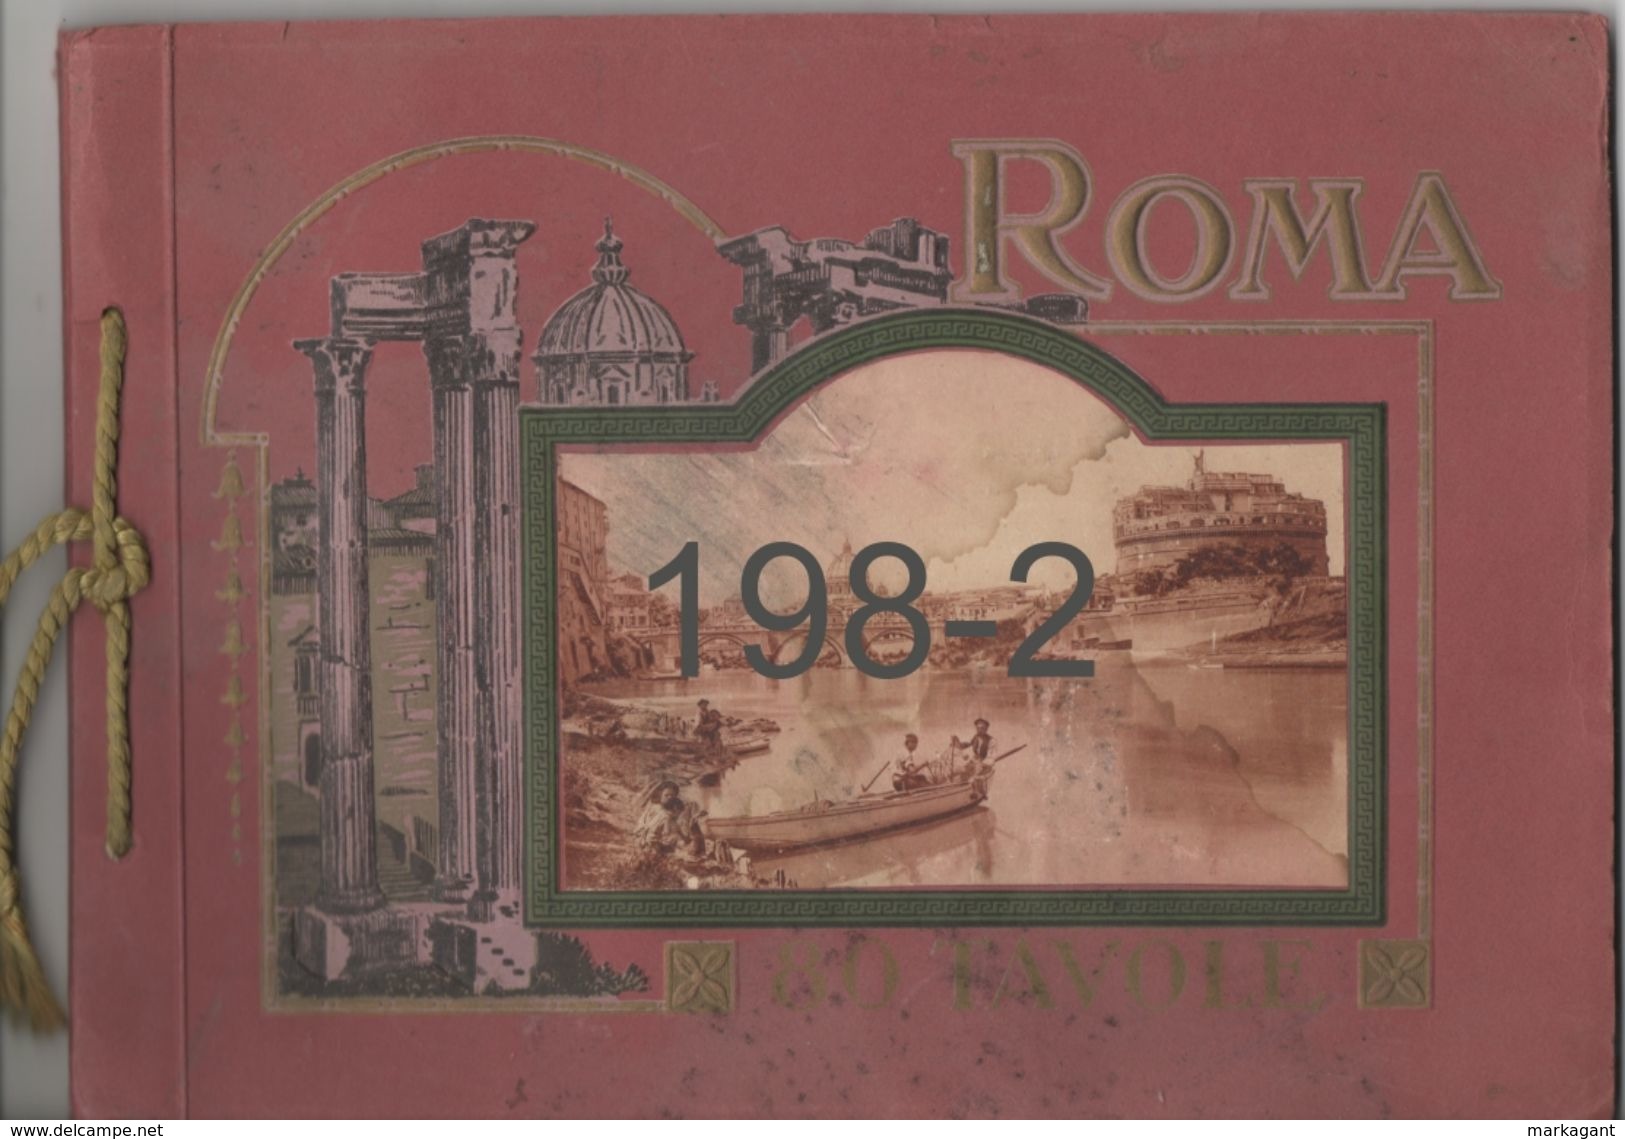 ROMA / 80 TAVOLE - Pictures